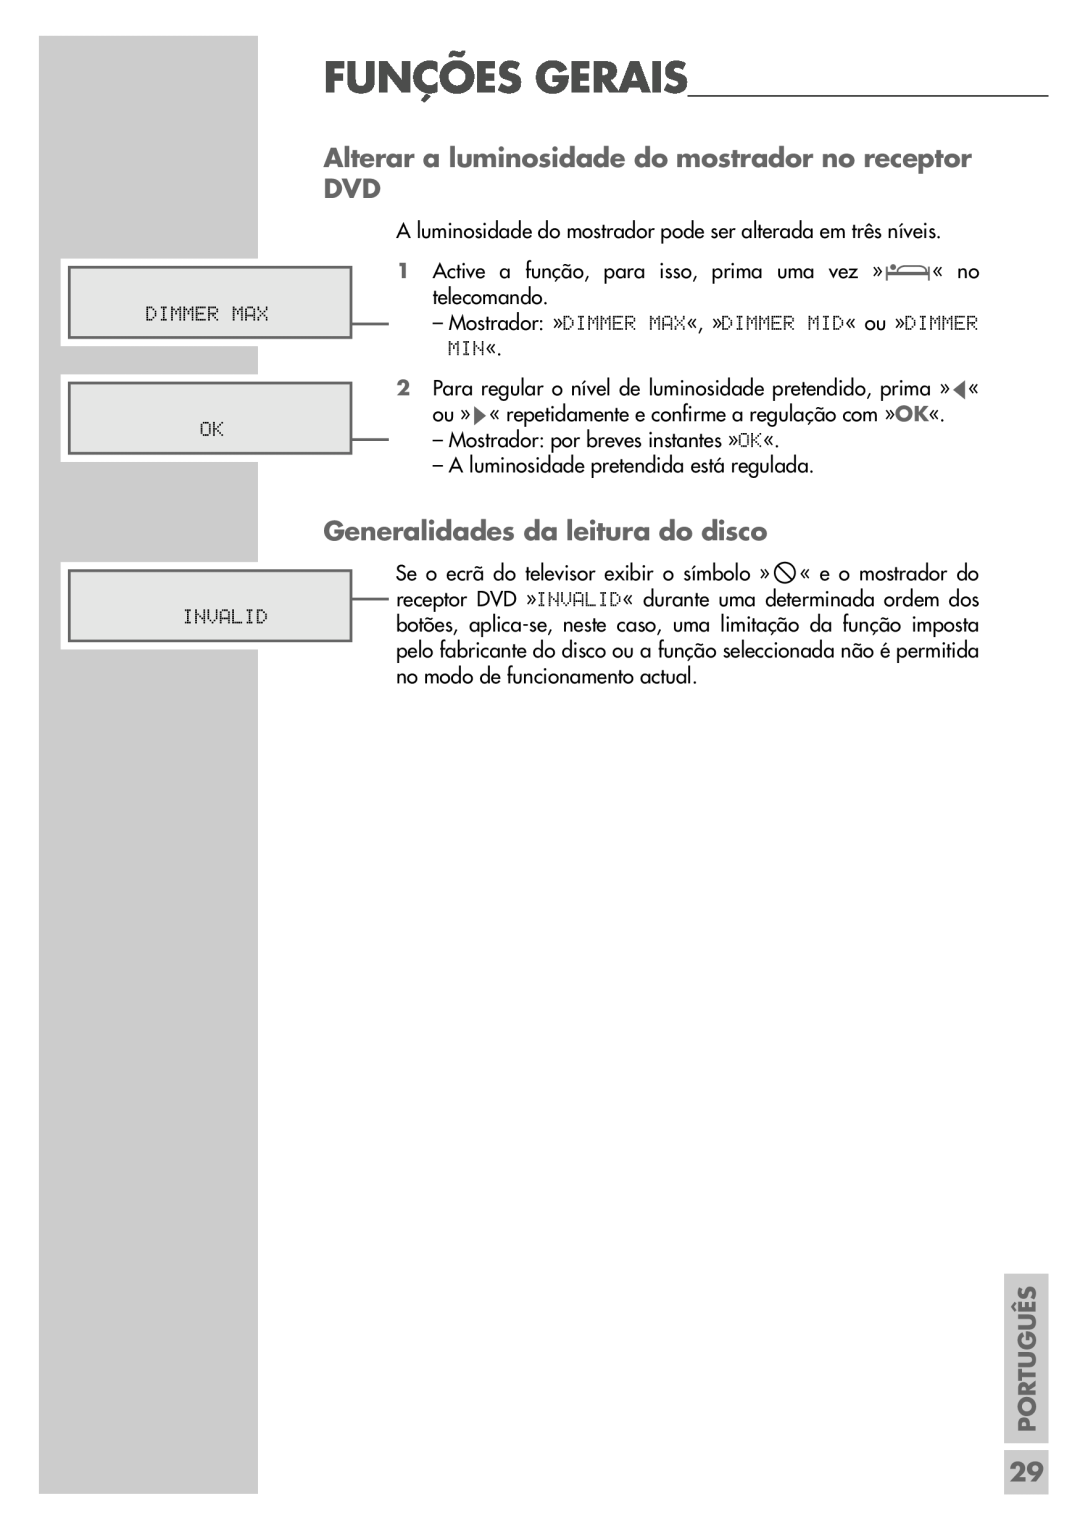 Grundig DR 5400 DD manual Alterar a luminosidade do mostrador no receptor, Generalidades da leitura do disco, Português 